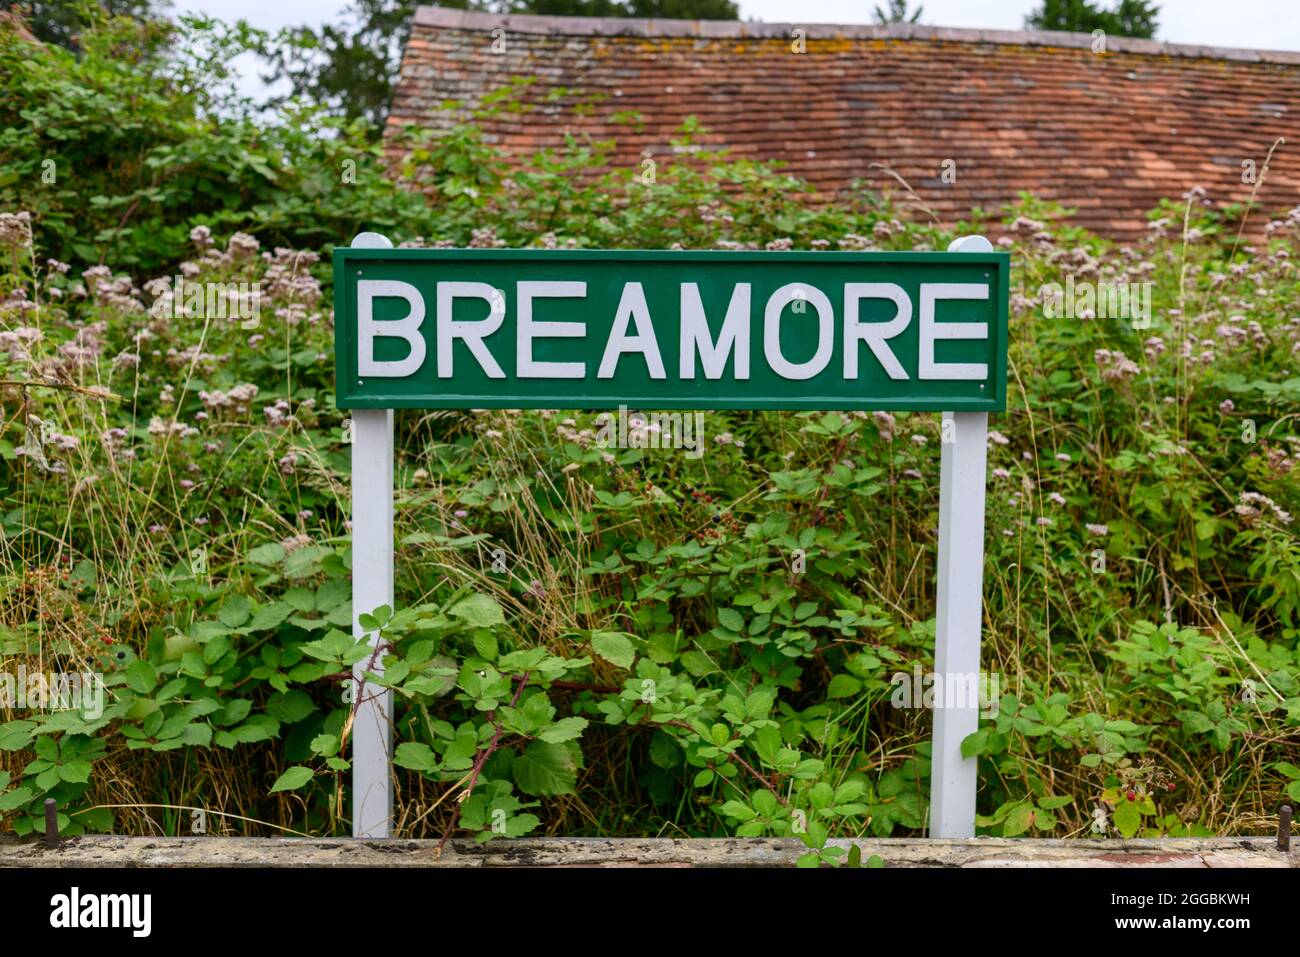 Stazione ferroviaria di Breamore, Hampshire, Regno Unito, fermata Salisbury fino alla linea Dorset, chiusa nel 1964 dopo Beeching Report. Ripristinato targa. Foto Stock